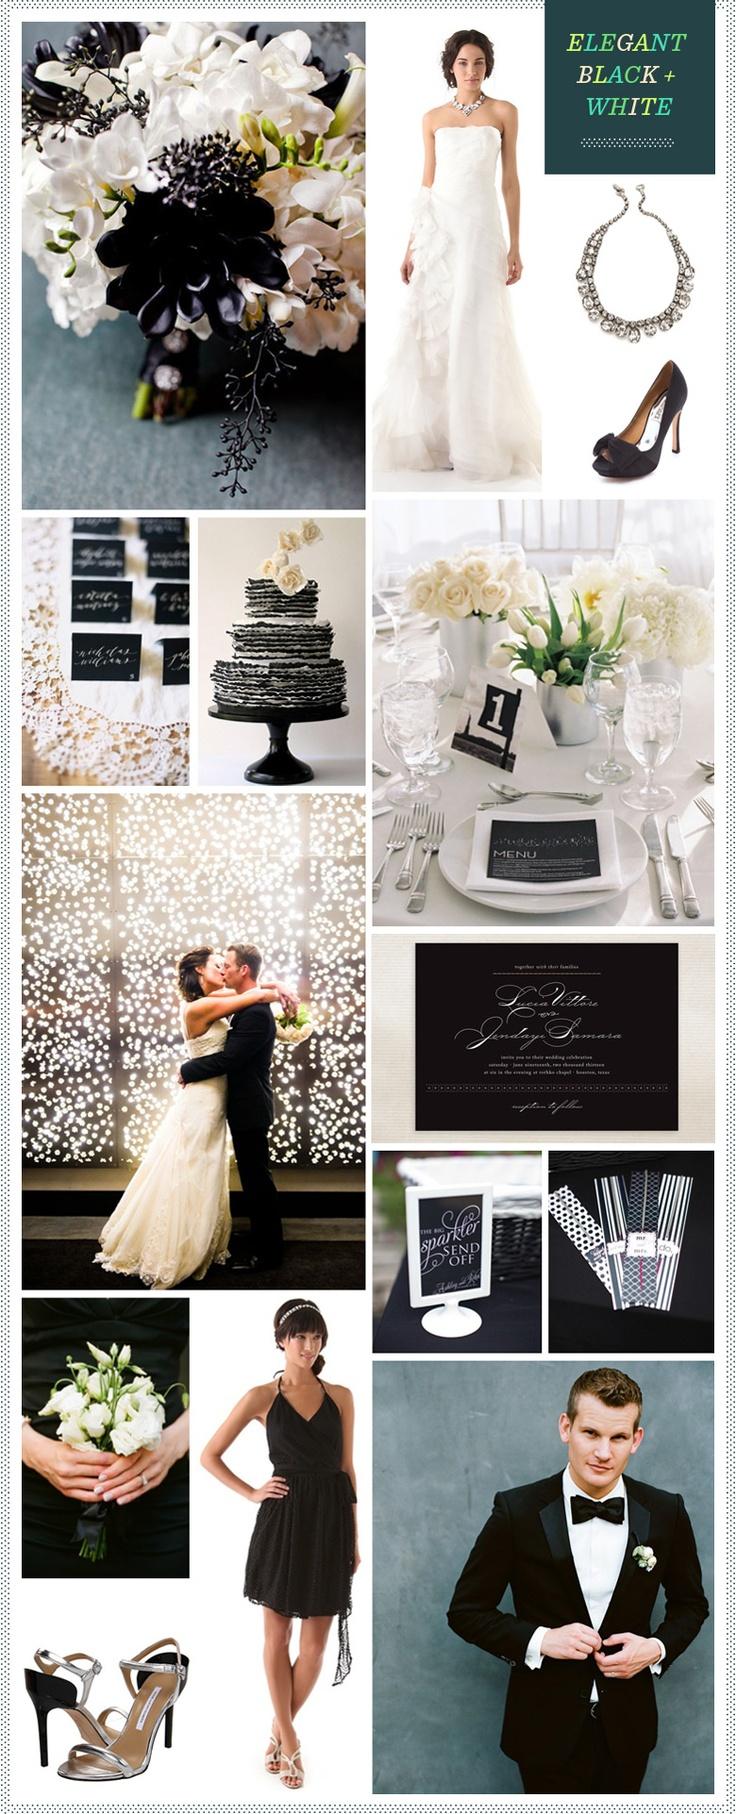 زفاف - الكلاسيكية أسود / أبيض الزفاف